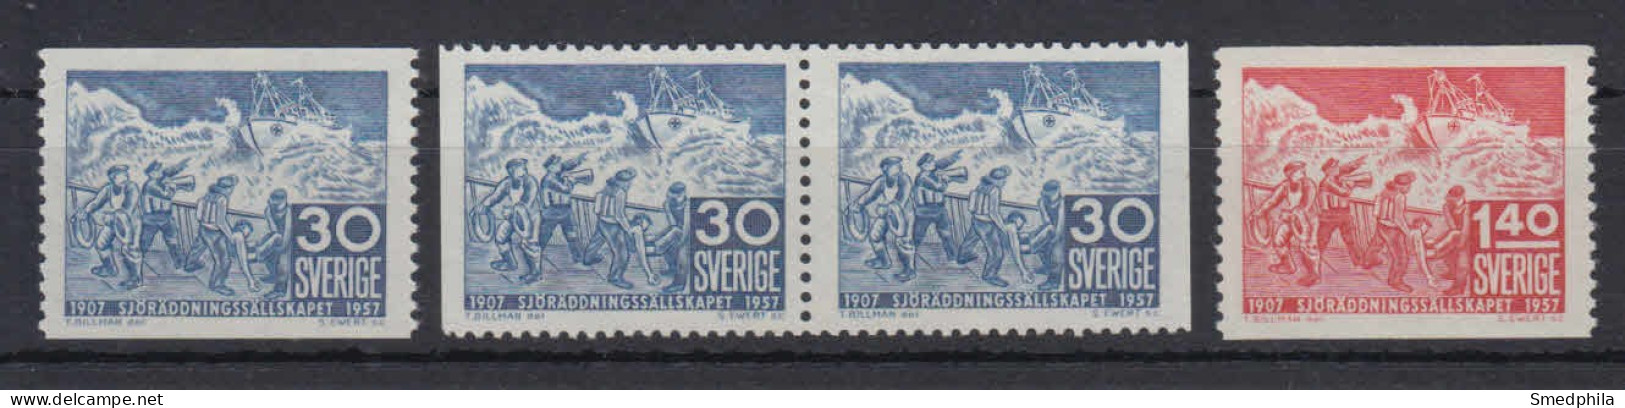 Sweden 1957 - Michel 421-422 MNH ** - Ongebruikt